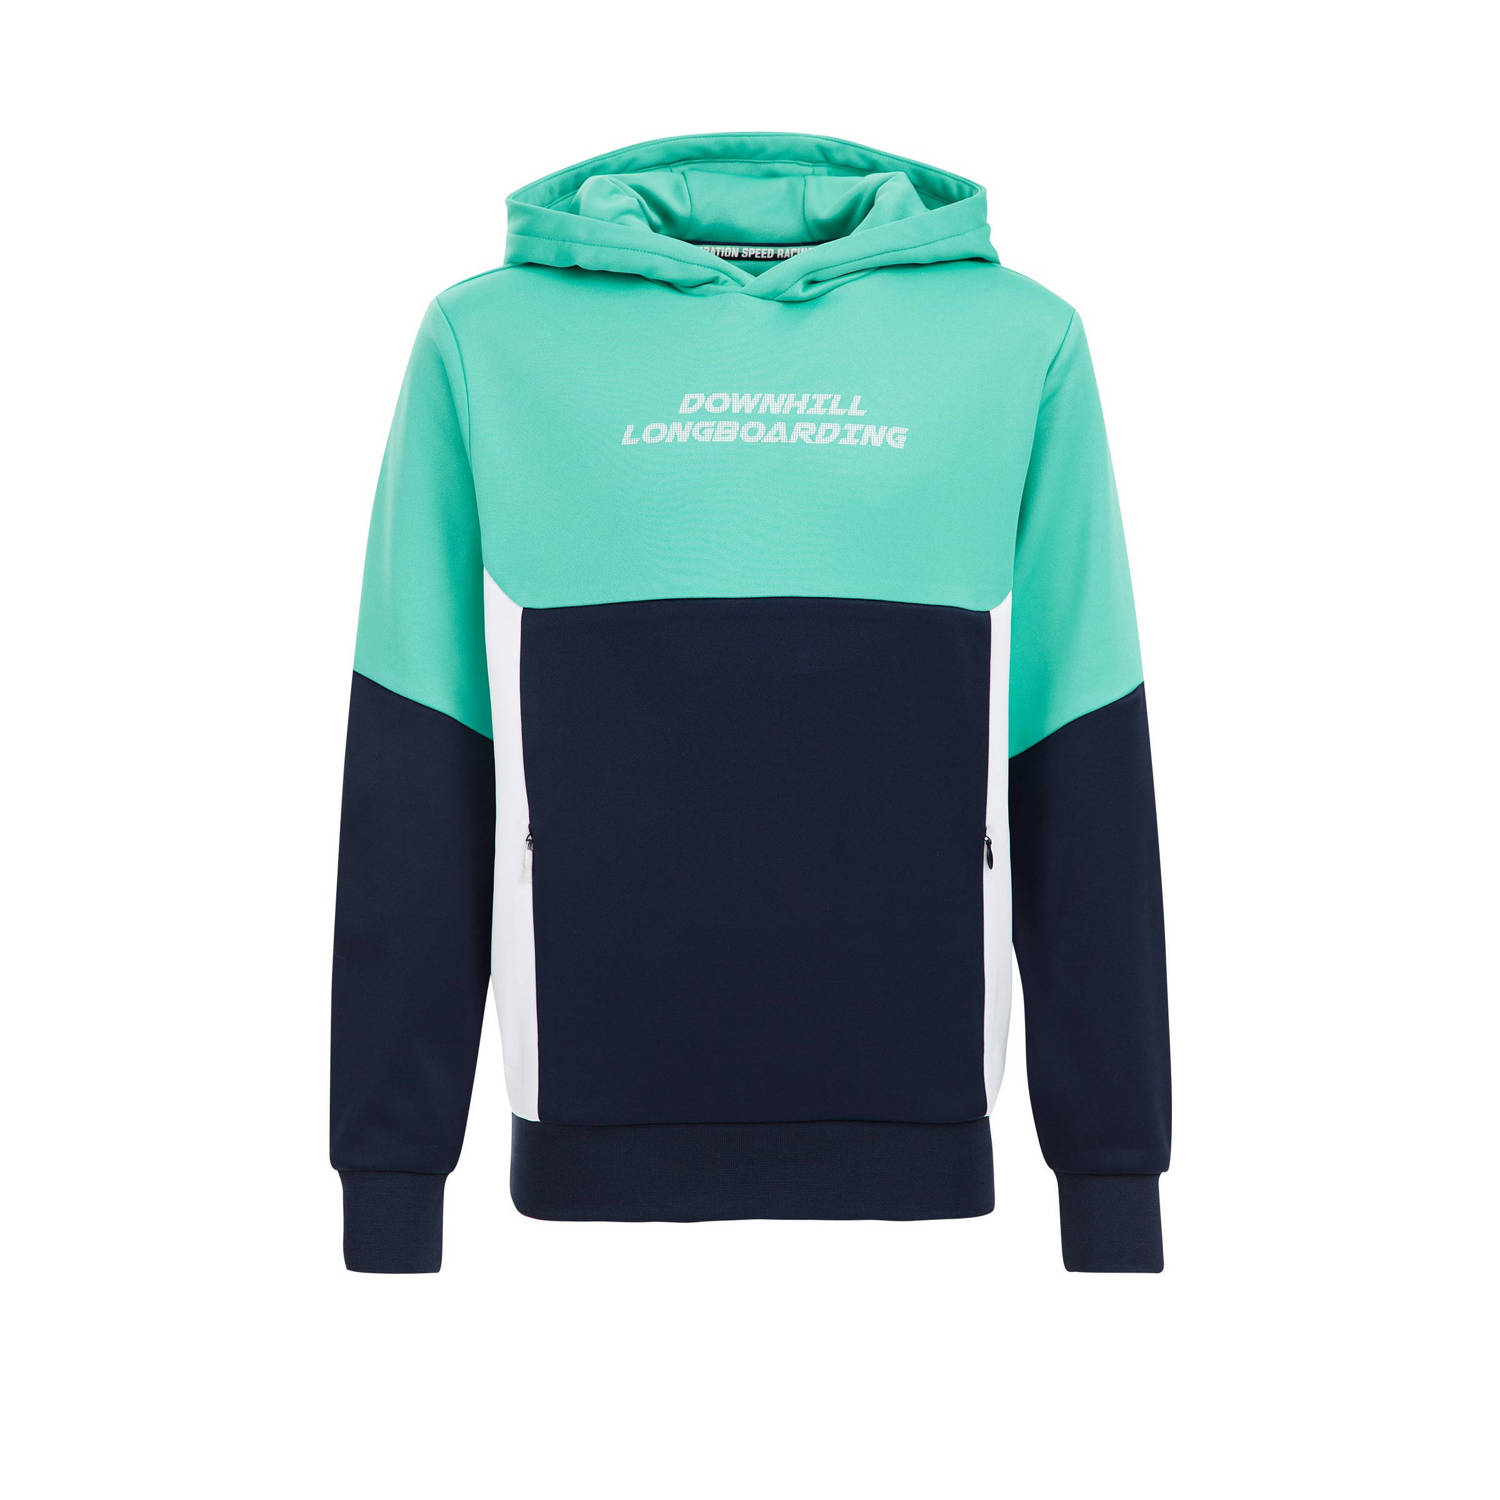 WE Fashion hoodie met printopdruk turquoise donkerblauw wit Sweater Printopdruk 110 116